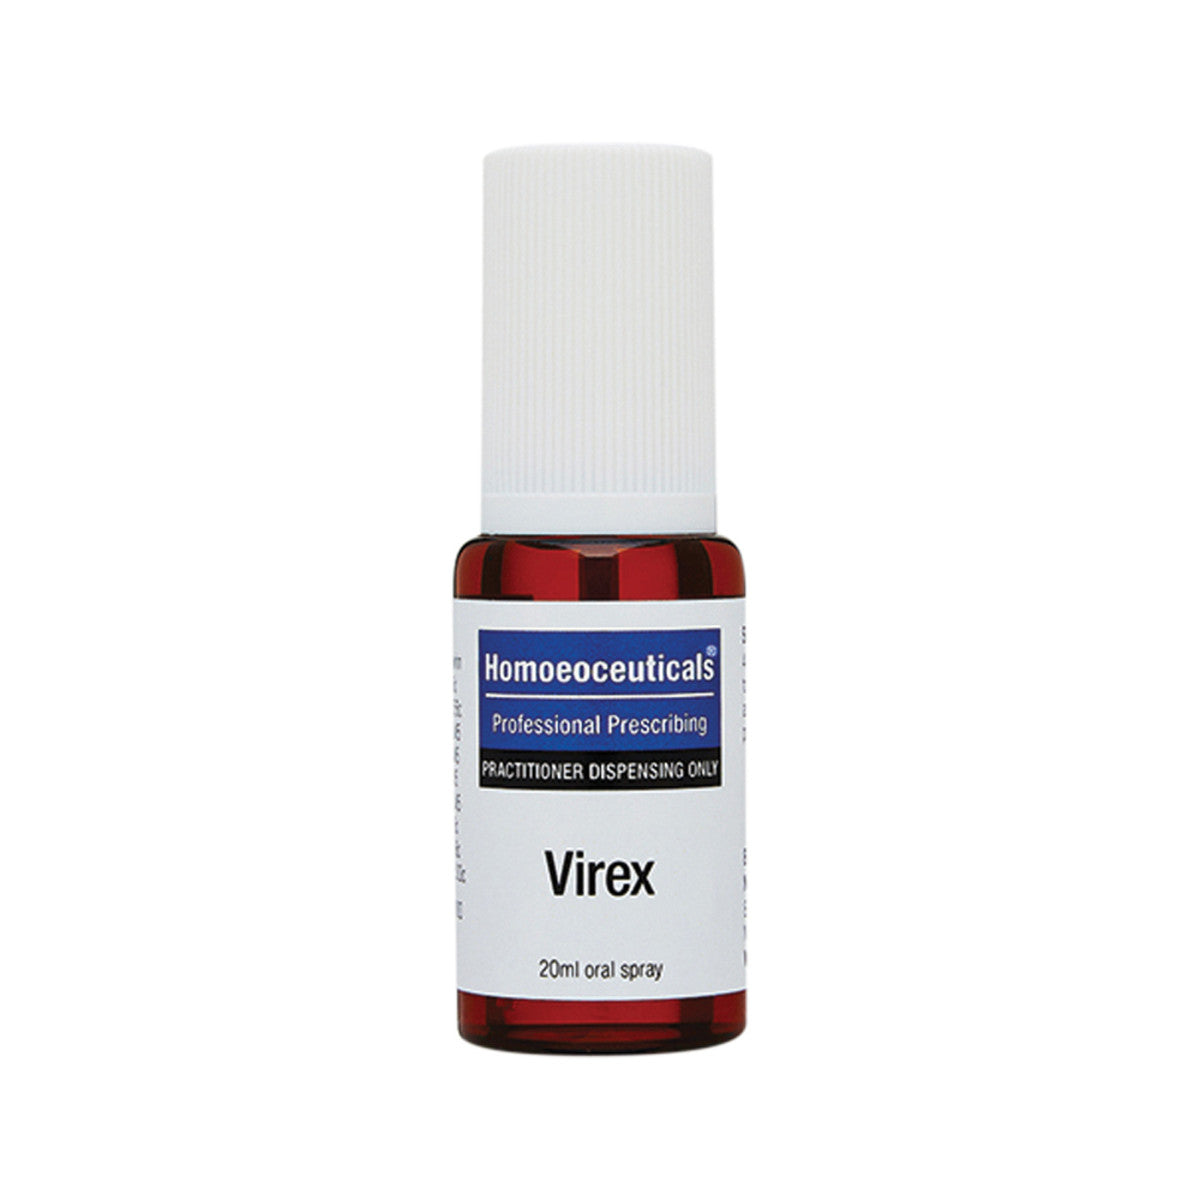 Homoeoceuticals - Virex Spray